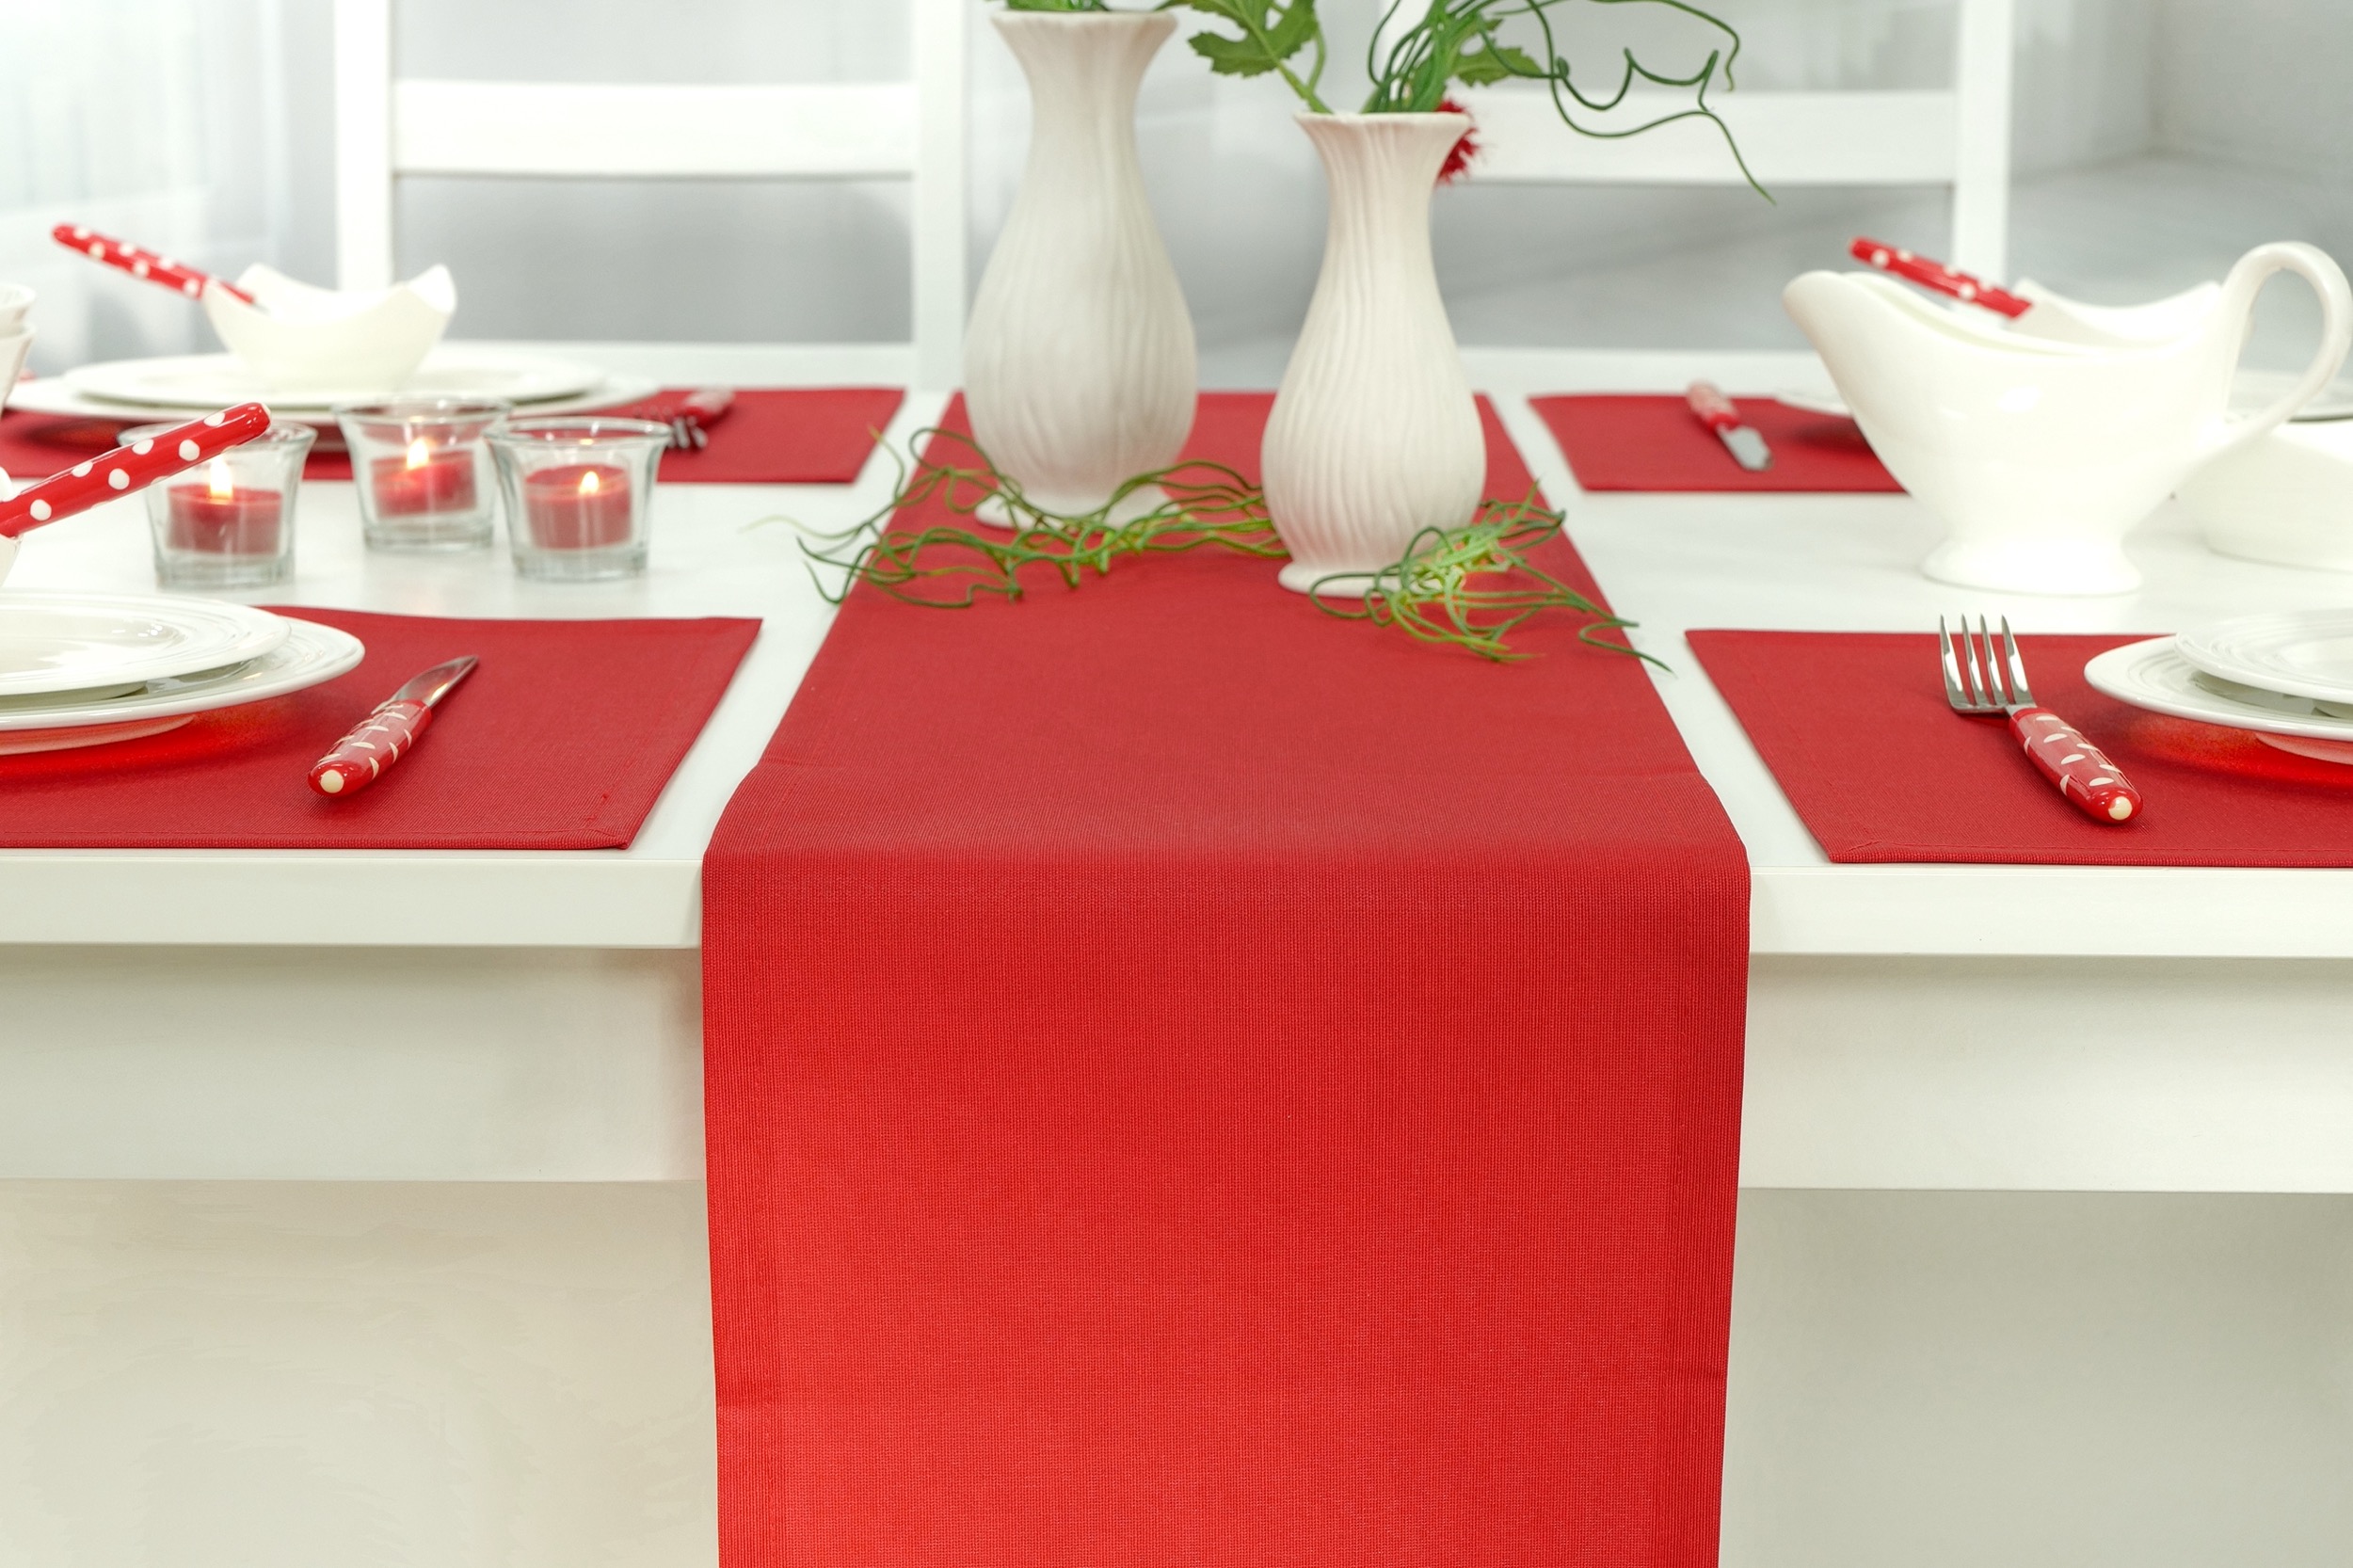 Tischdecken | Rot Tischläufer Markenqualität | kaufen in Tischdecken-Shop.de. TiDeko TiDeko® online